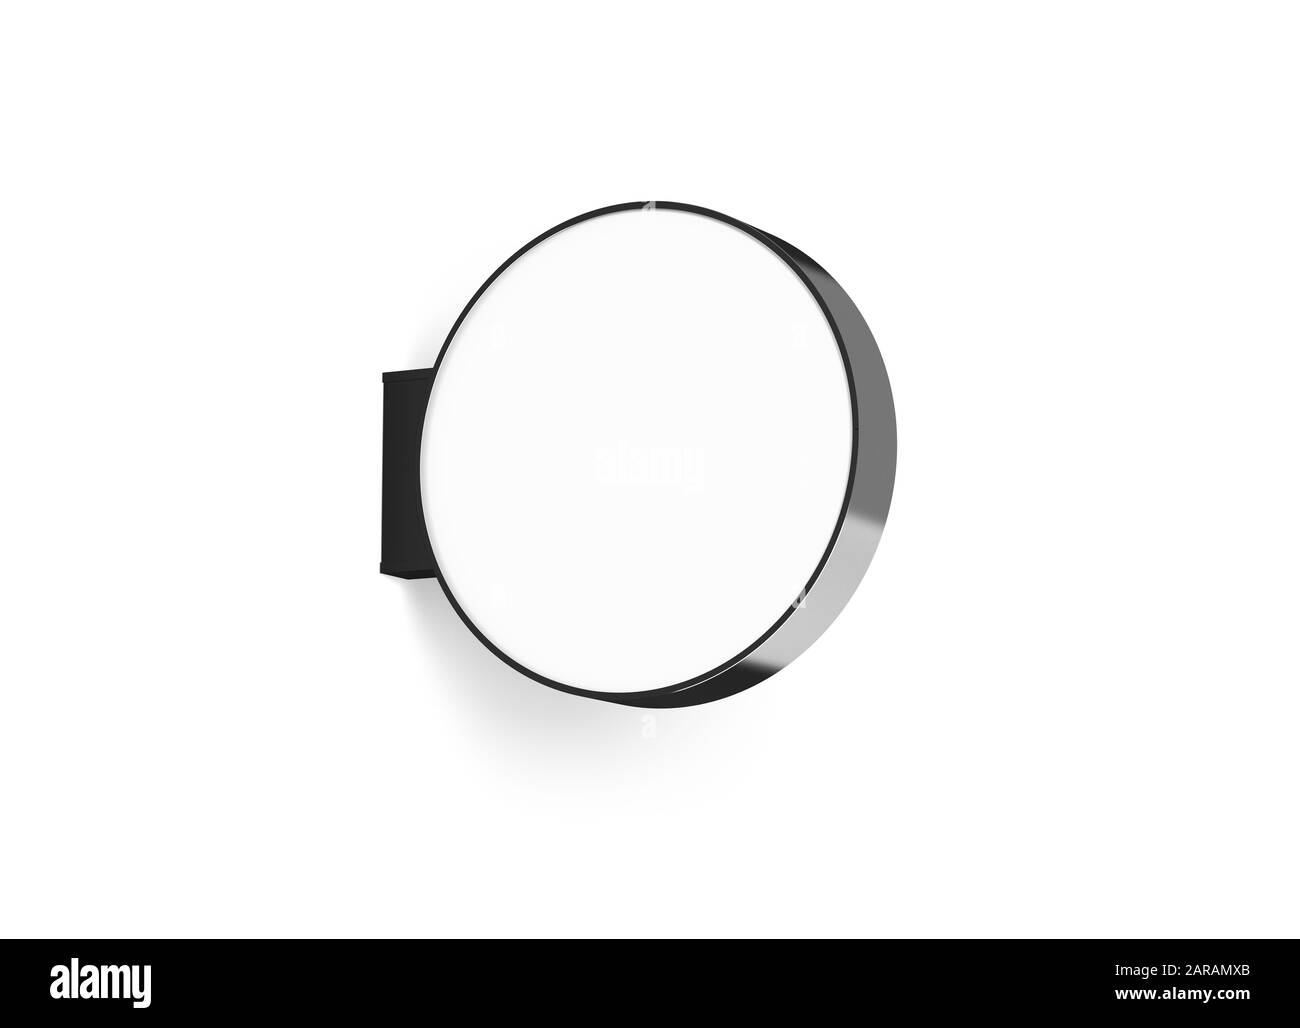 Design de la signalisation circulaire vierge pour magasin, maquette isolée, Banque D'Images